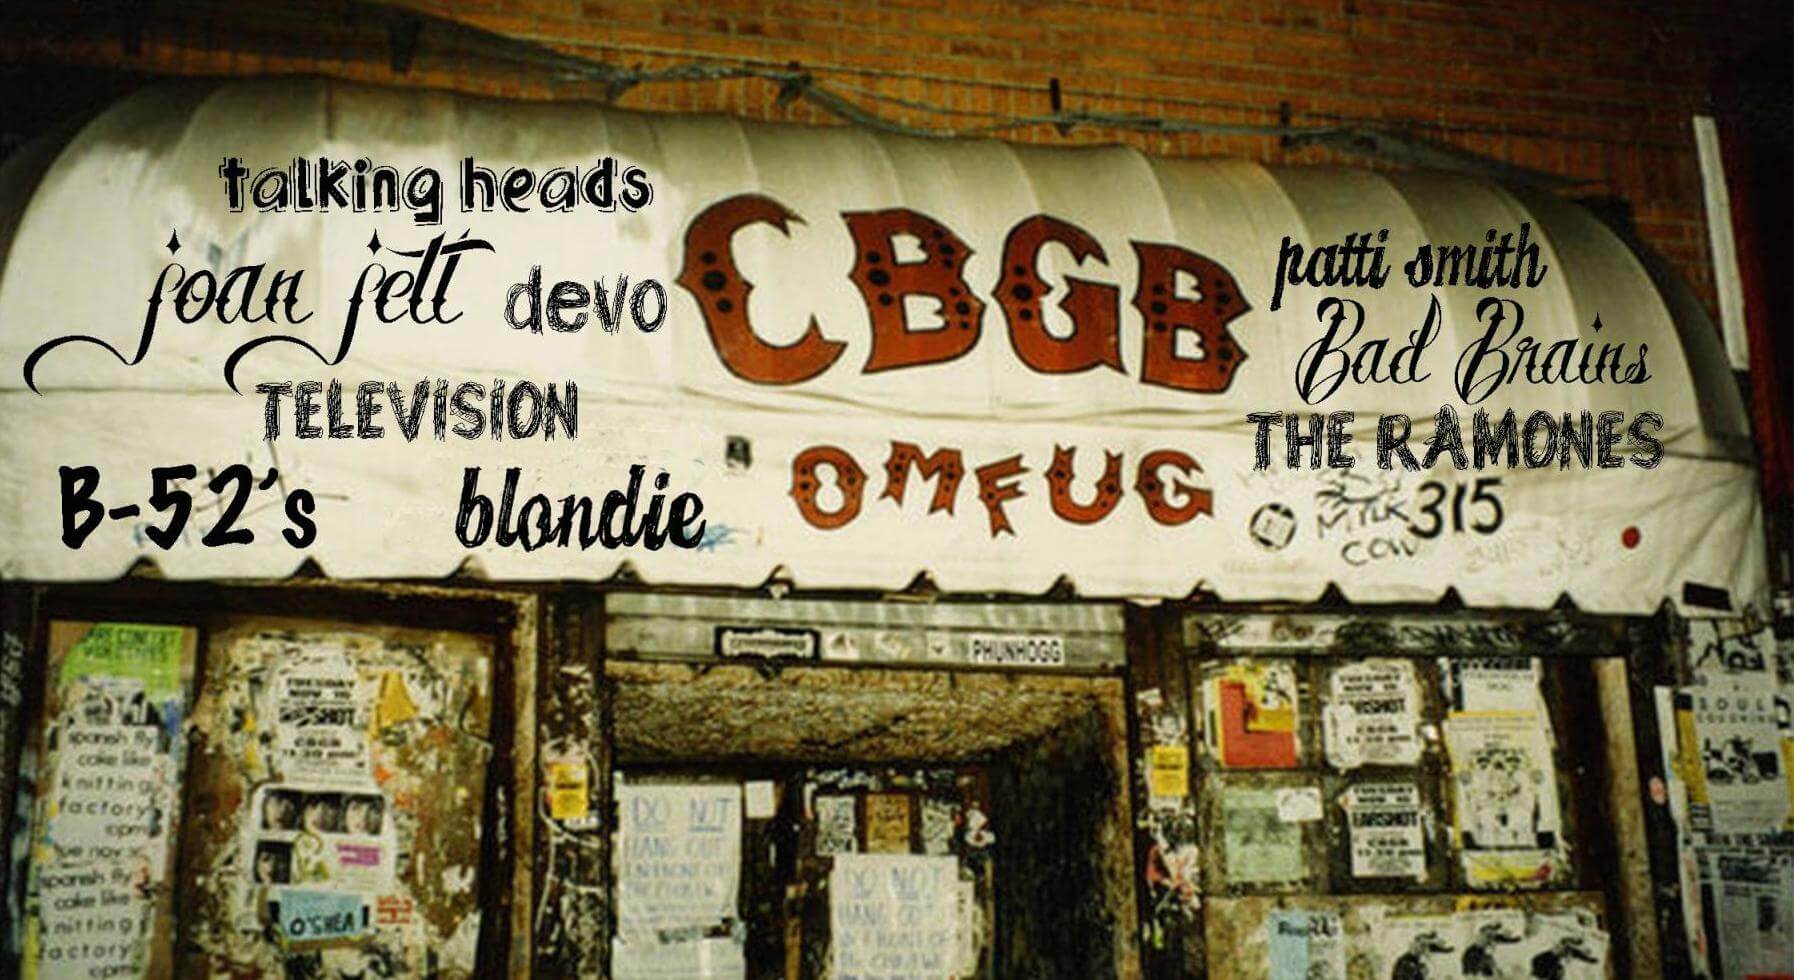 CBGB And CBGB Gallery Live Concert Videos